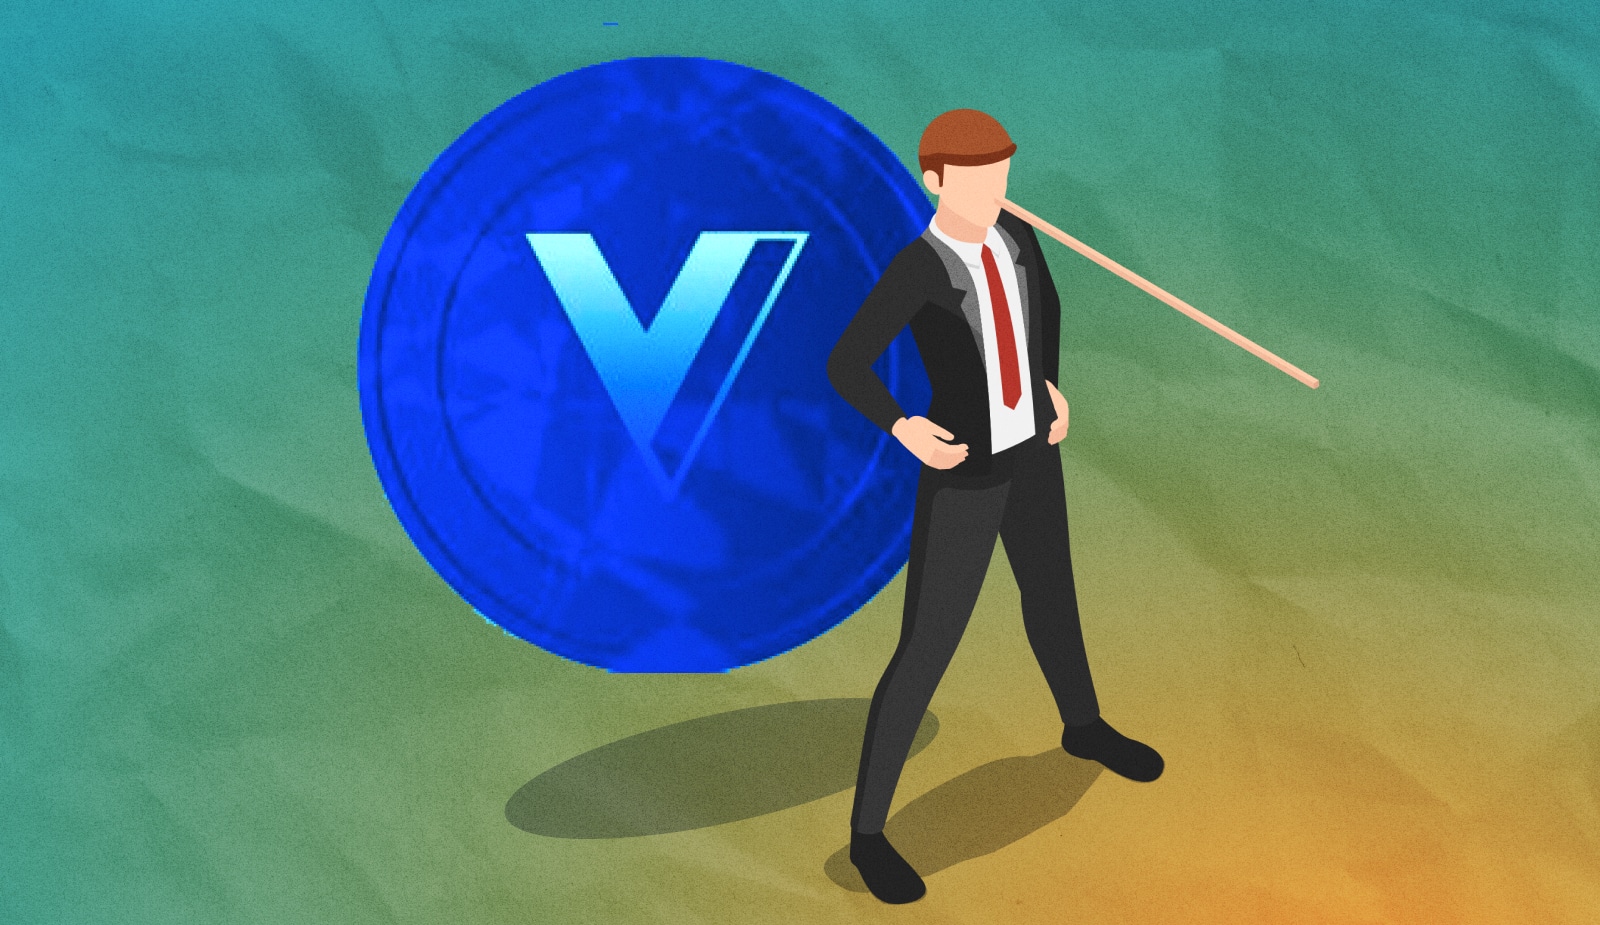 Voyager обманывала клиентов, создавая имидж официальной финансовой организации - новые подробности банкротства компании